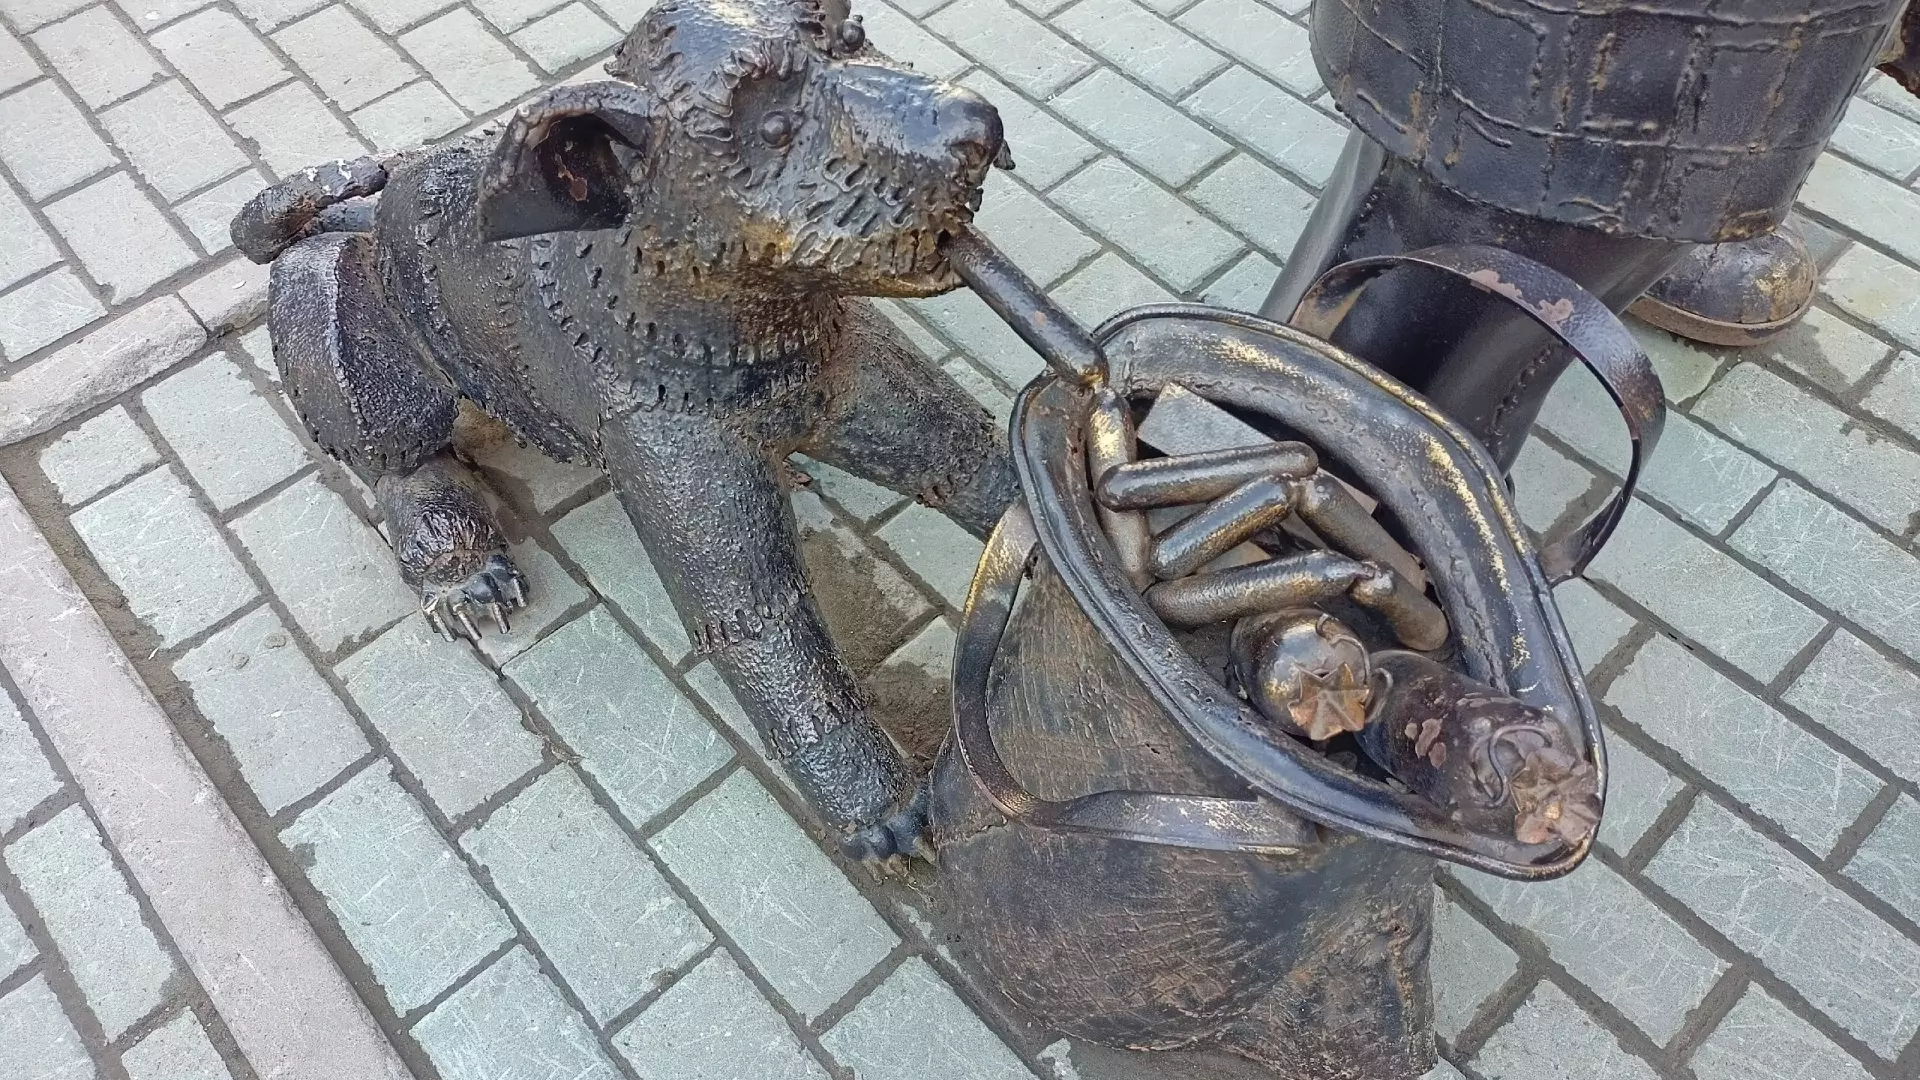 Собачка, которая тащит сосиски из сумки, является частью скульптурной композиции, установленной в Новосибирске.